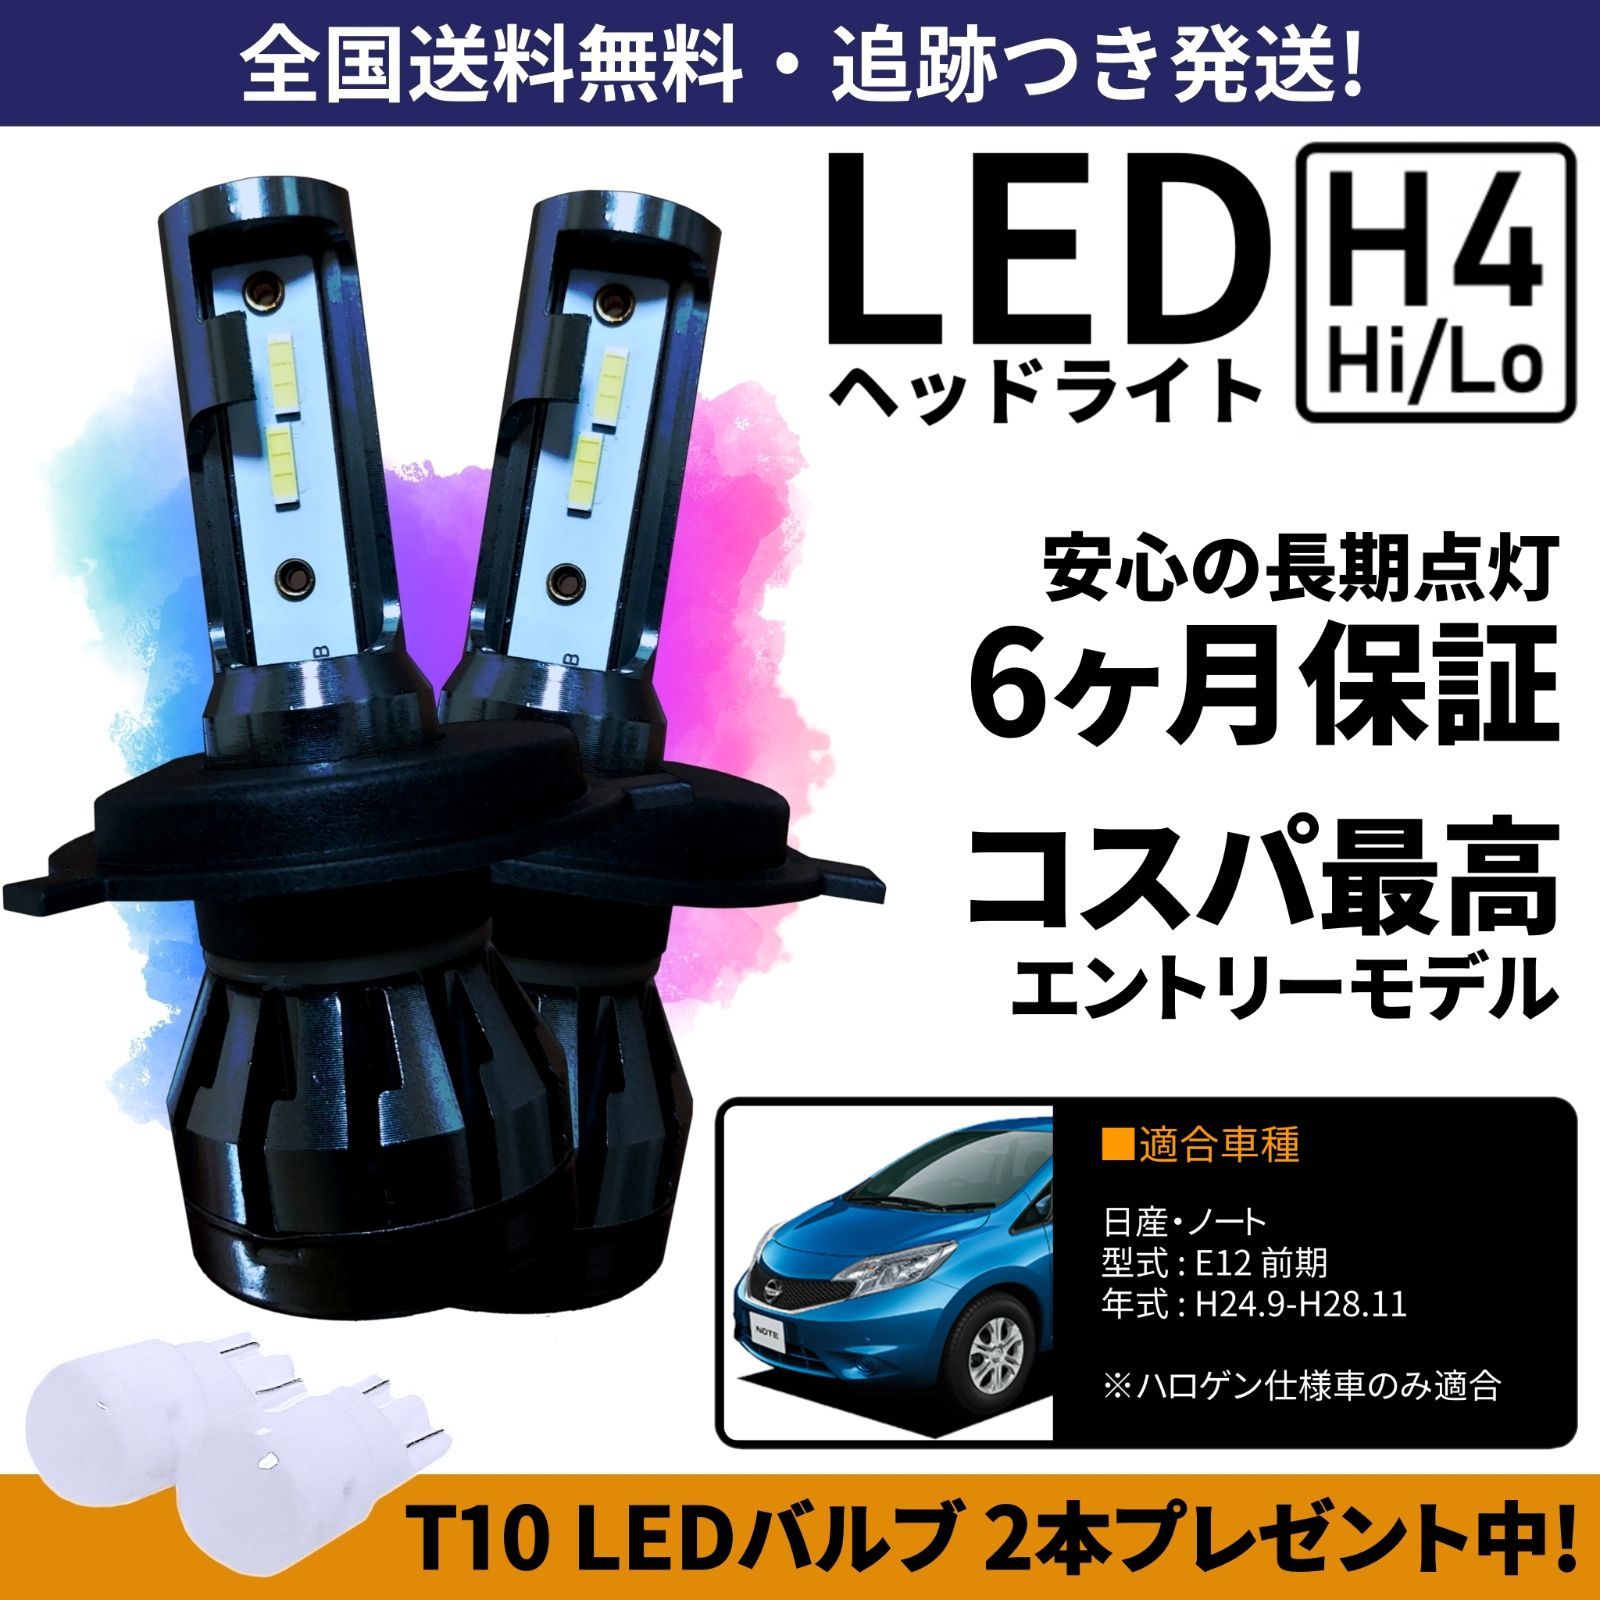 【送料無料】日産 ノート E12 前期 LEDヘッドライト H4 Hi/Lo ホワイト 6000K 車検対応 保証付き